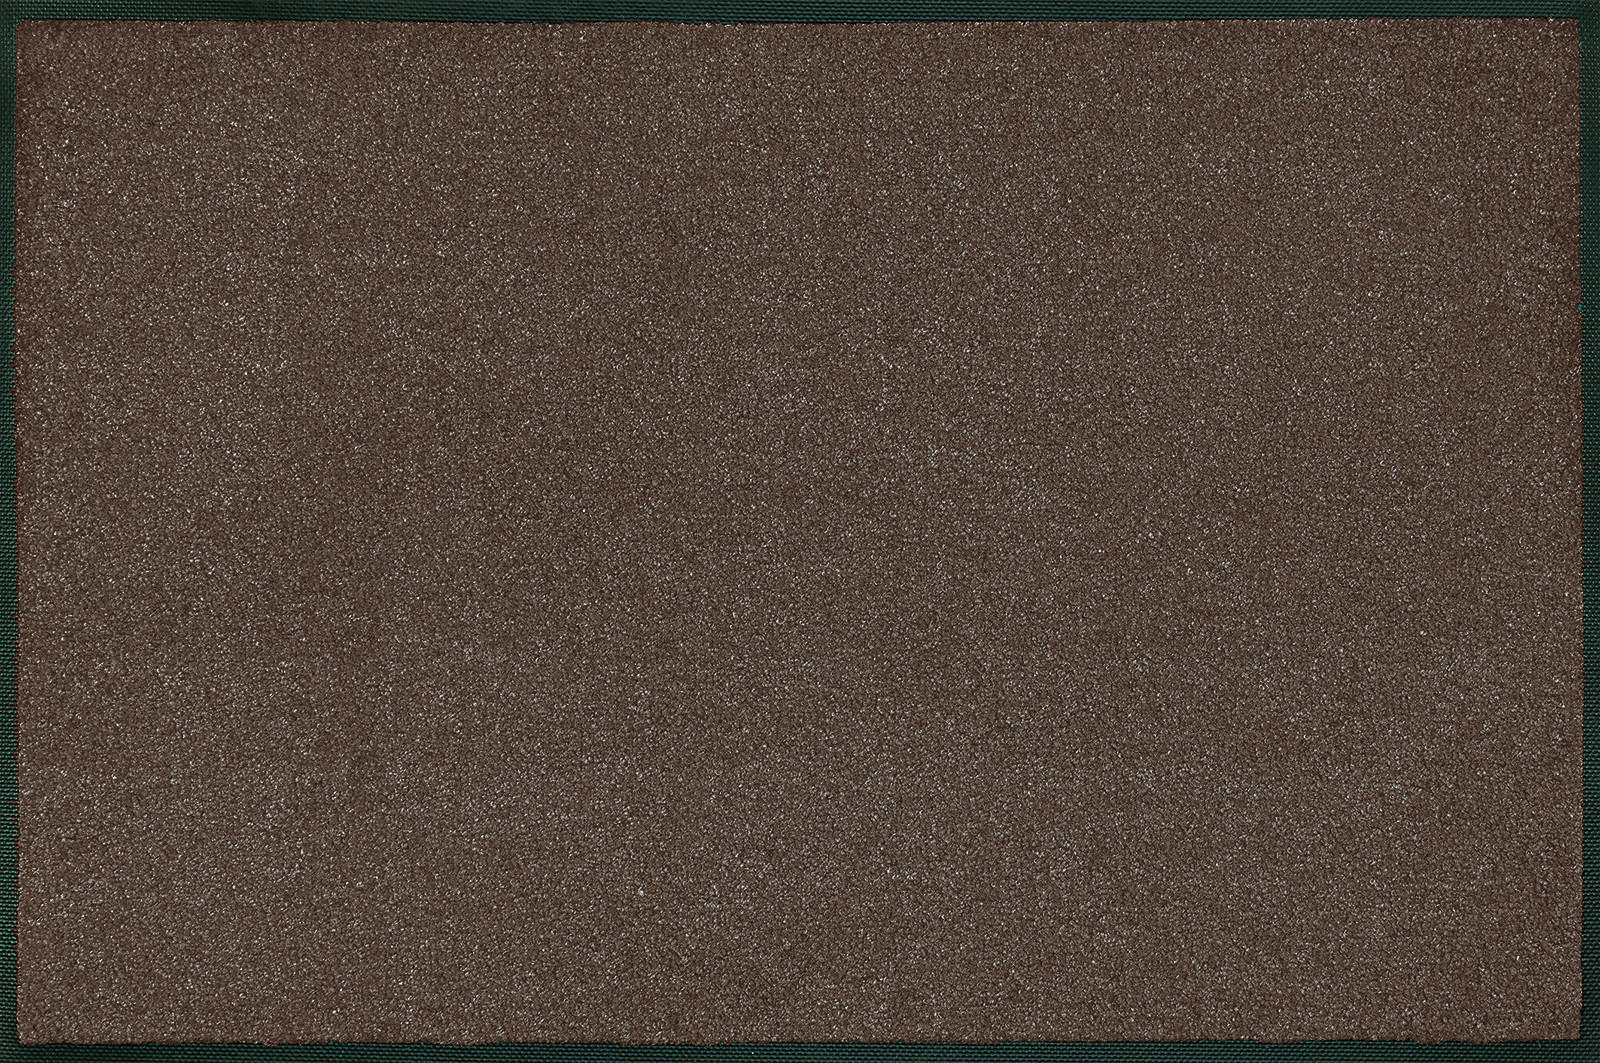 FLACHWEBETEPPICH 120/180 cm Brown  - Dunkelbraun, KONVENTIONELL, Kunststoff (120/180cm) - Esposa